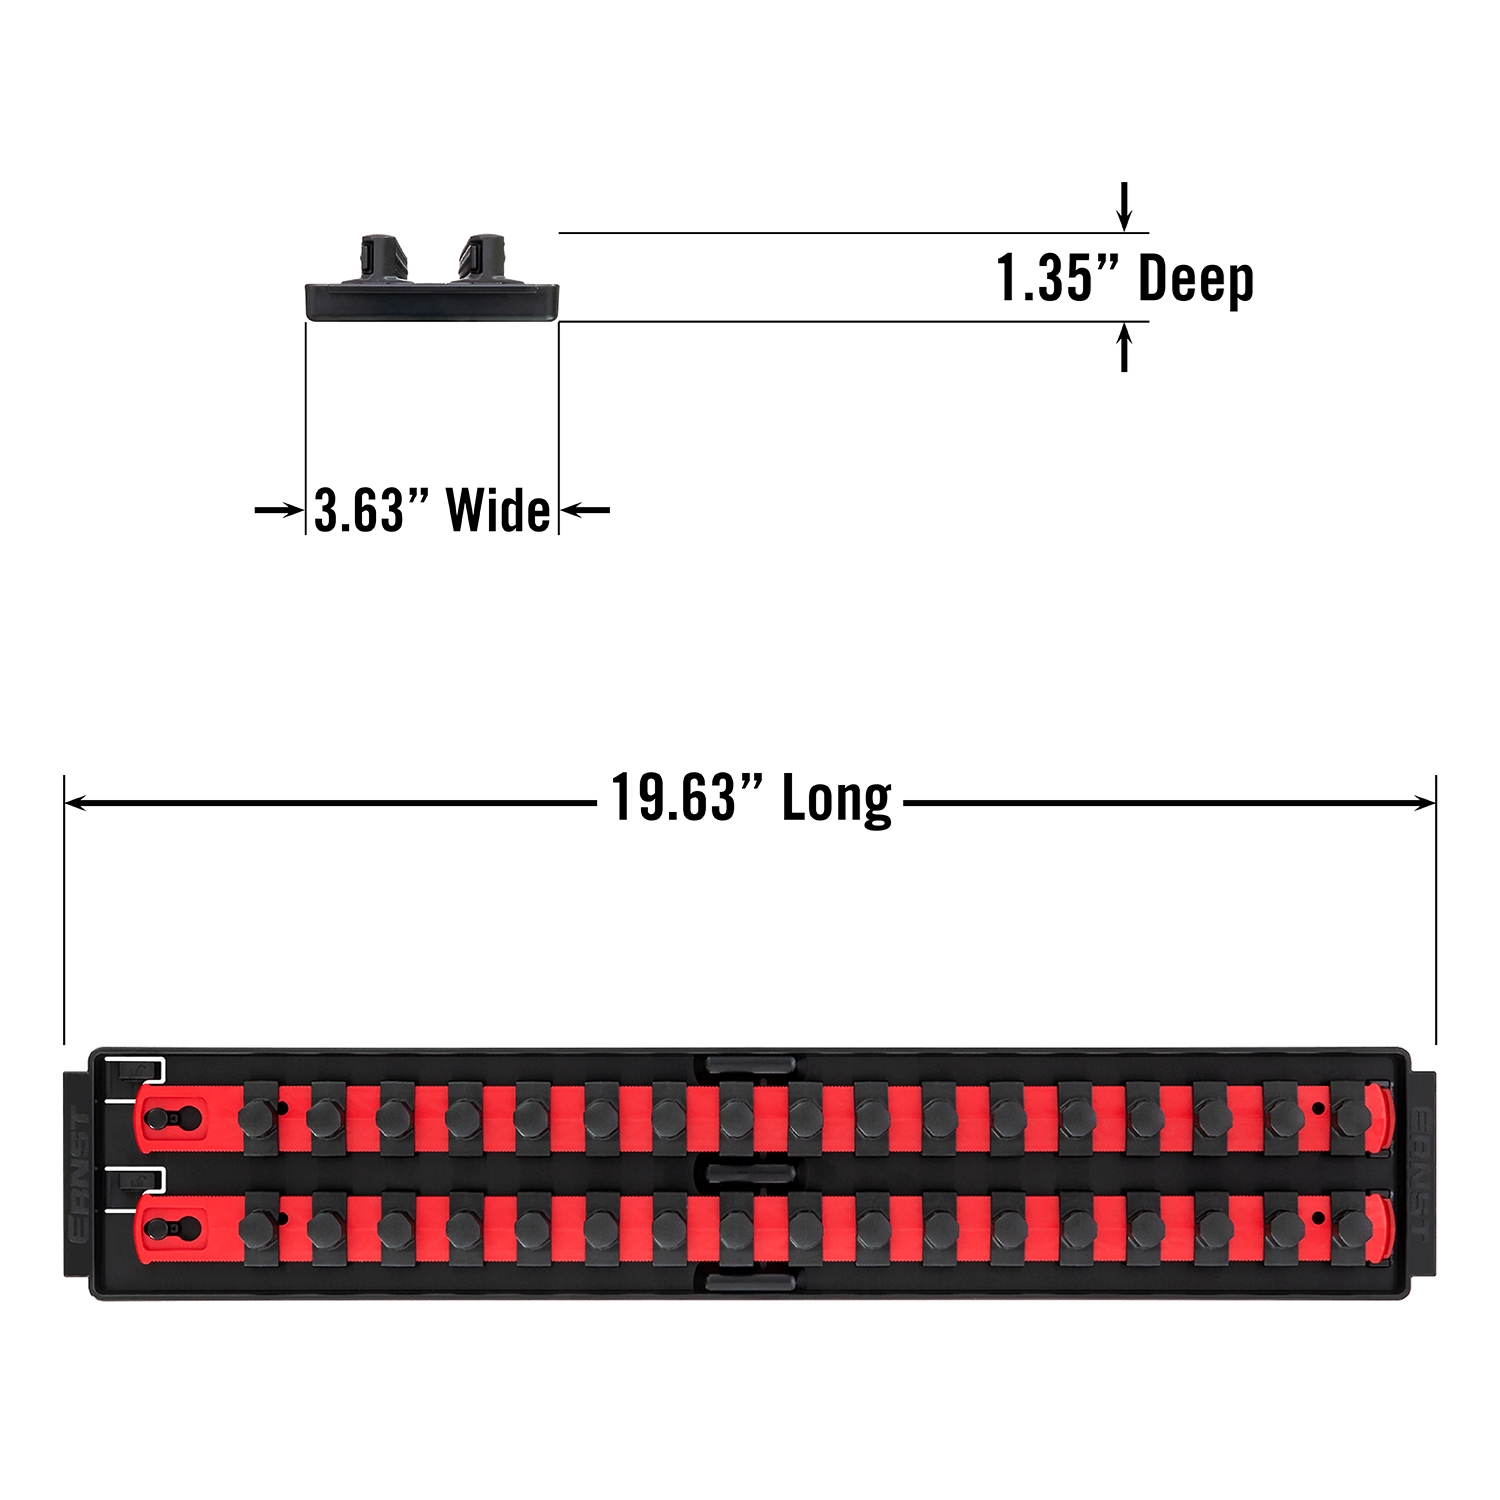 Ernst 8450 SOCKET BOSS 3 18" Rail  Socket Tray Organizer System Red 